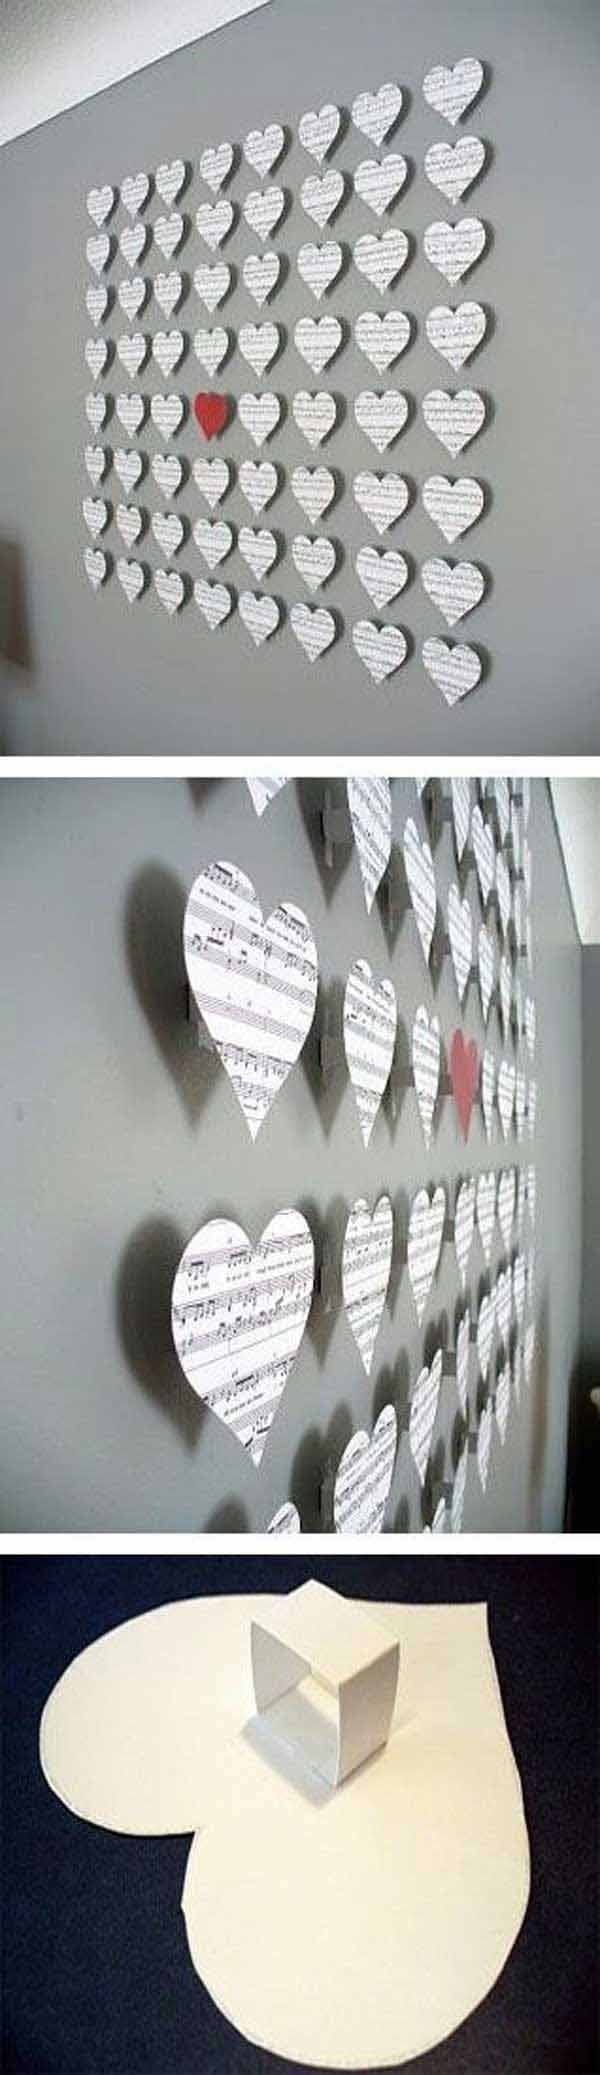 Flere hjerte laget for å dekorere en vegg